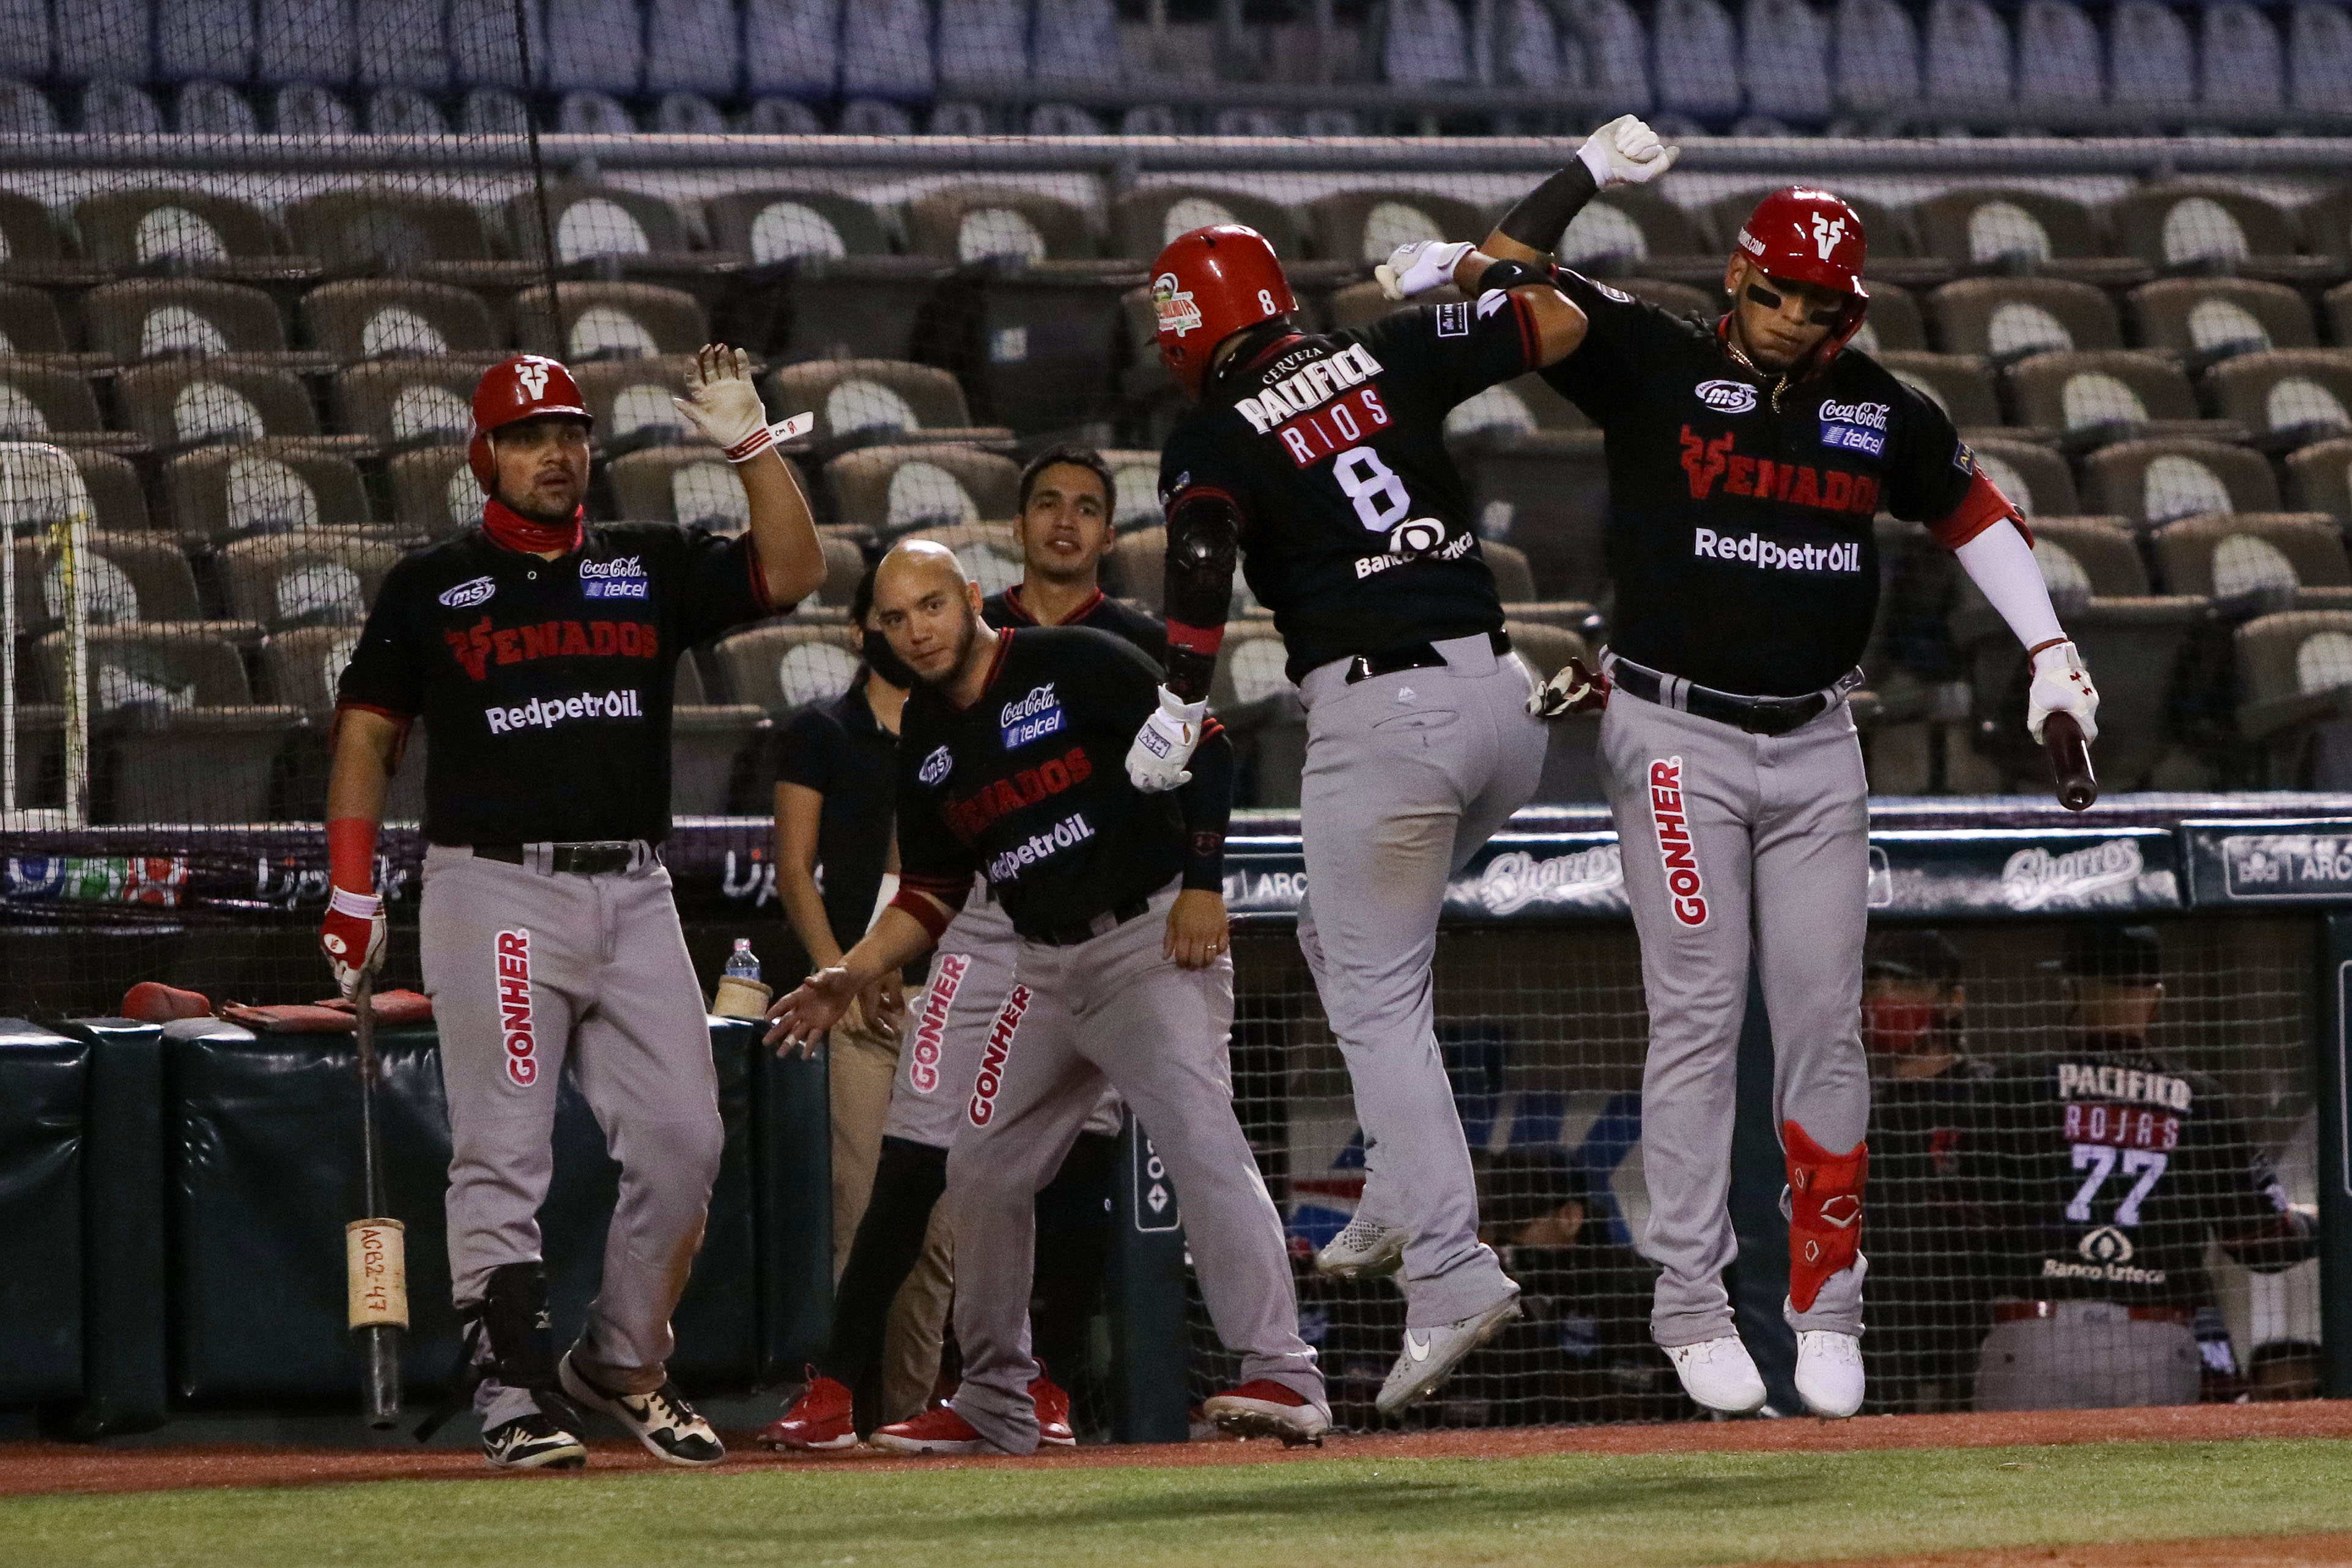 Los Venados son el equipo de beisbol de Mazatlán. (Imago7)